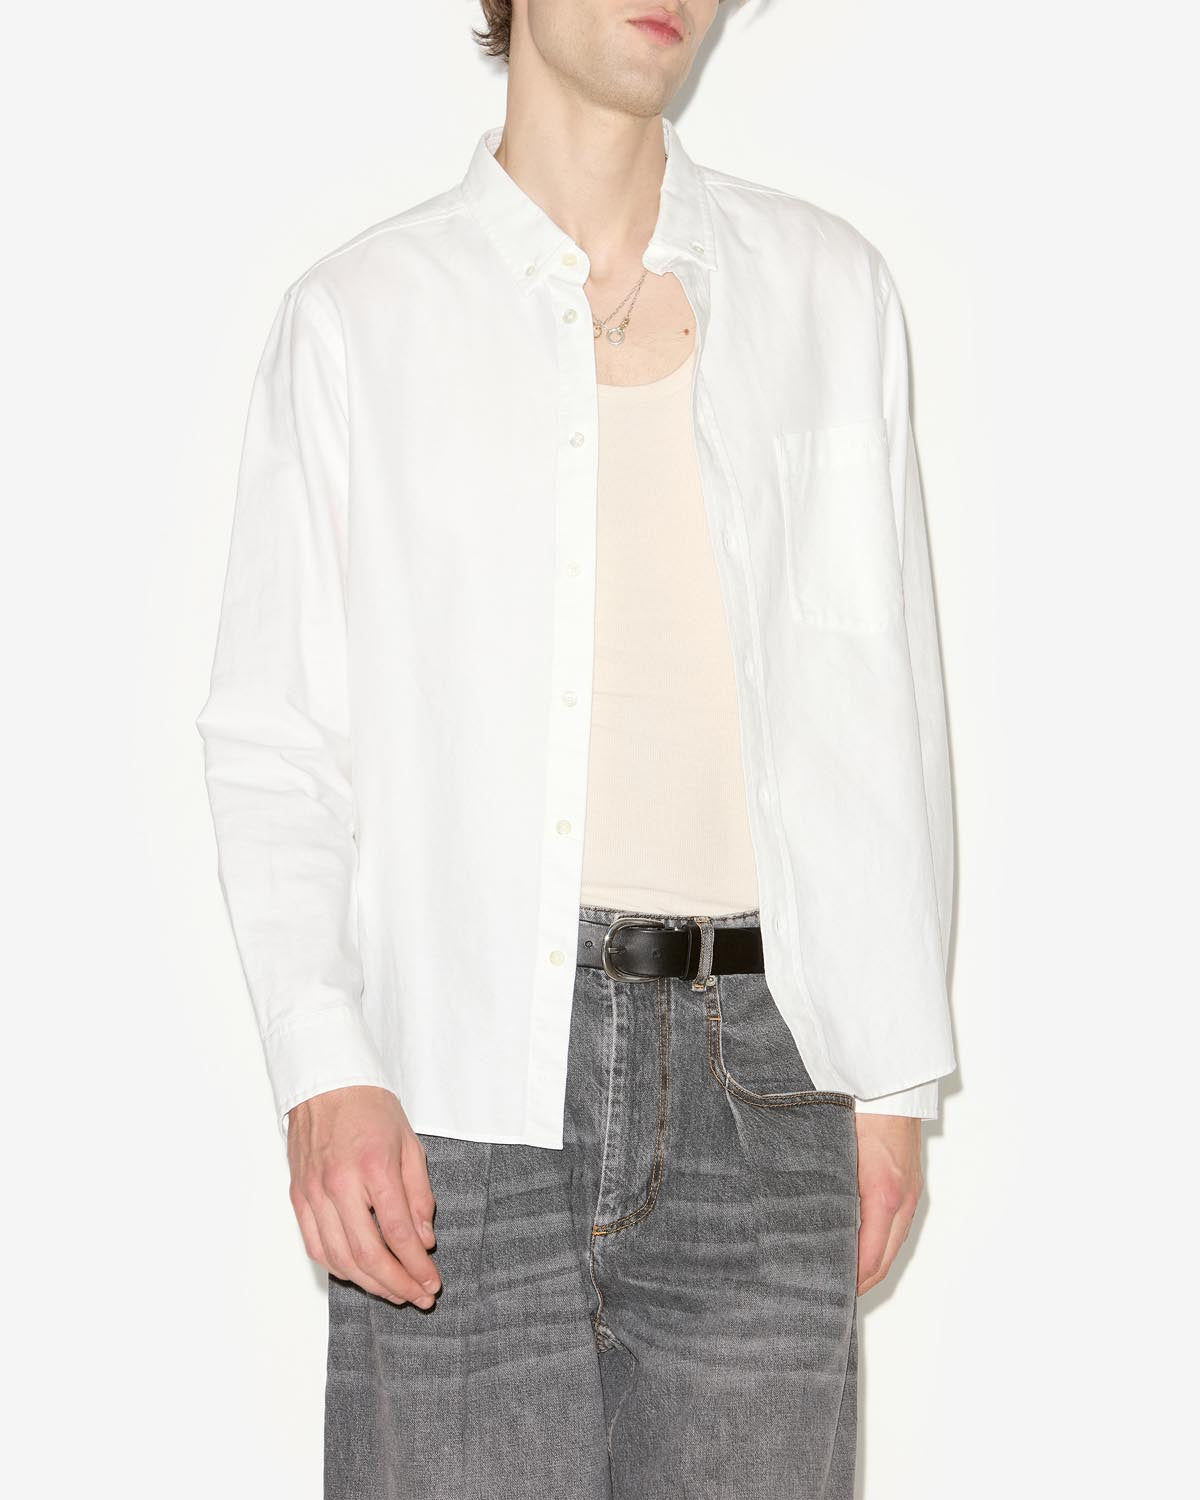 Jasolo 셔츠 Man 하얀색 5